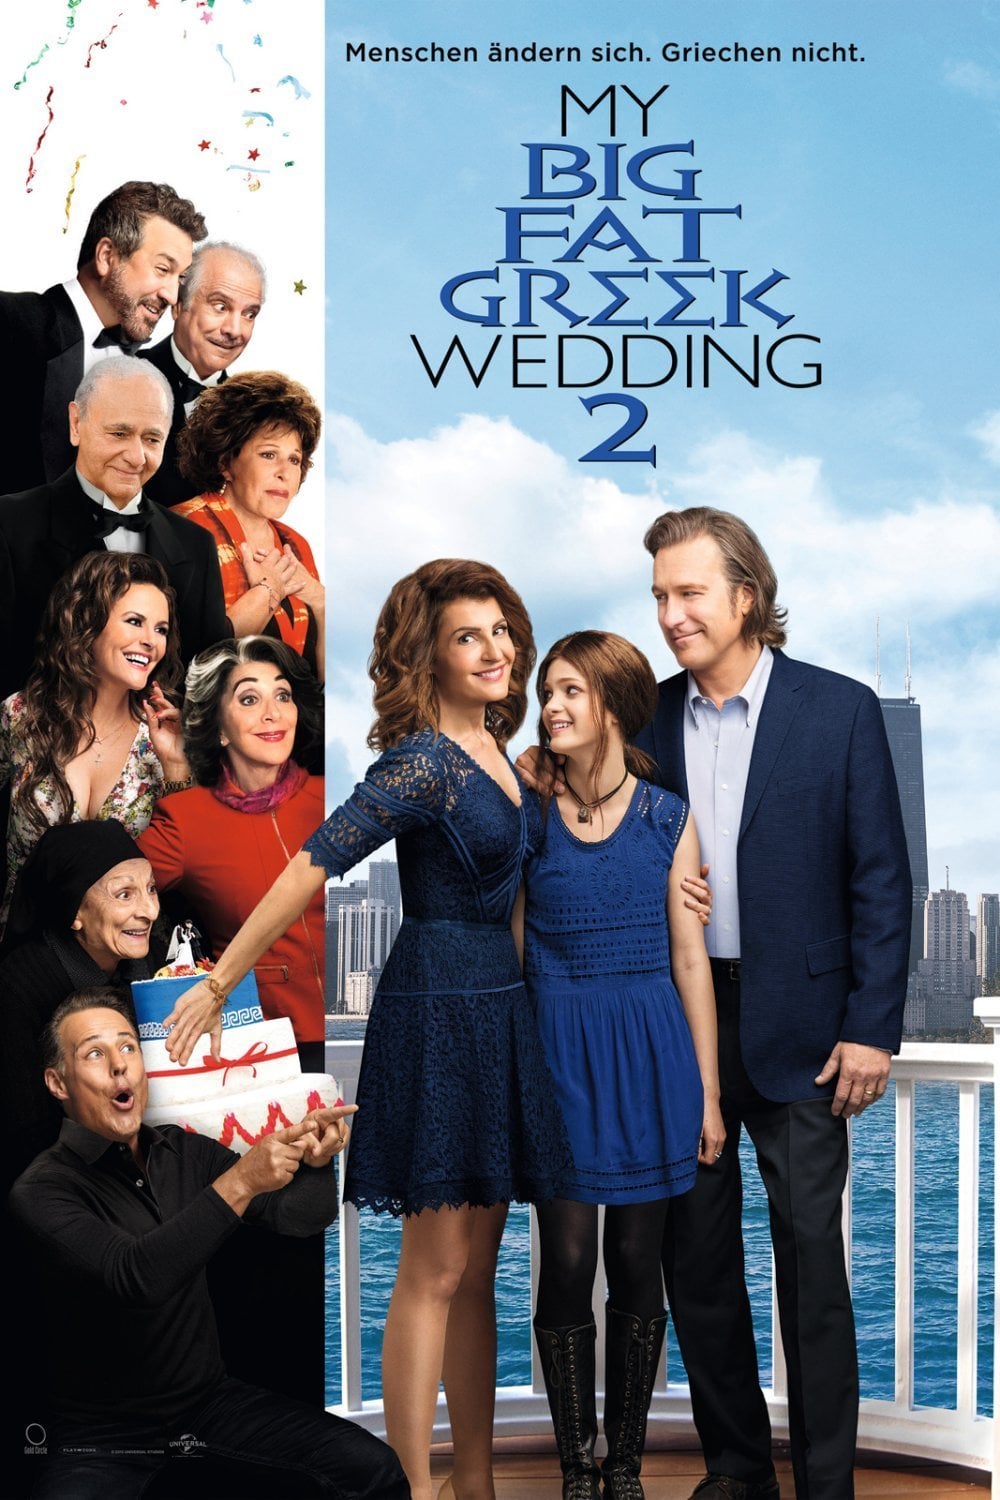 Plakat von "My Big Fat Greek Wedding 2"